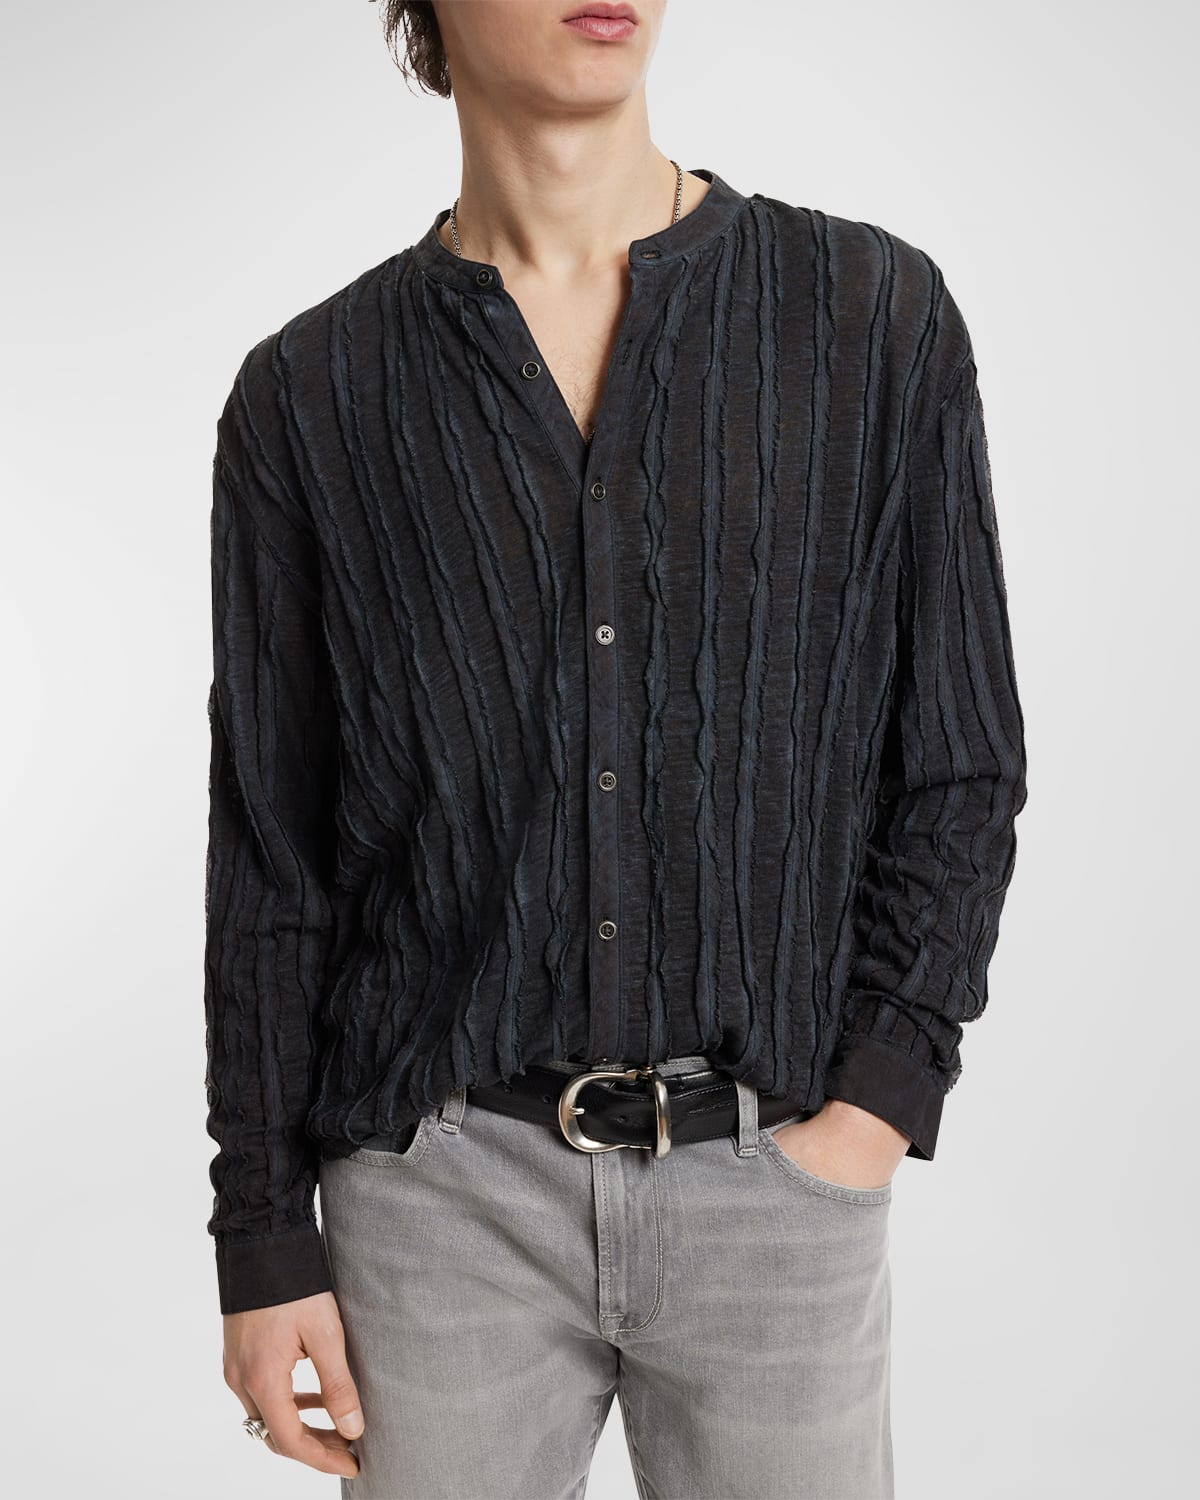 John Varvatos Men's Baxter Mixed-Media Stand-Collar Shirt